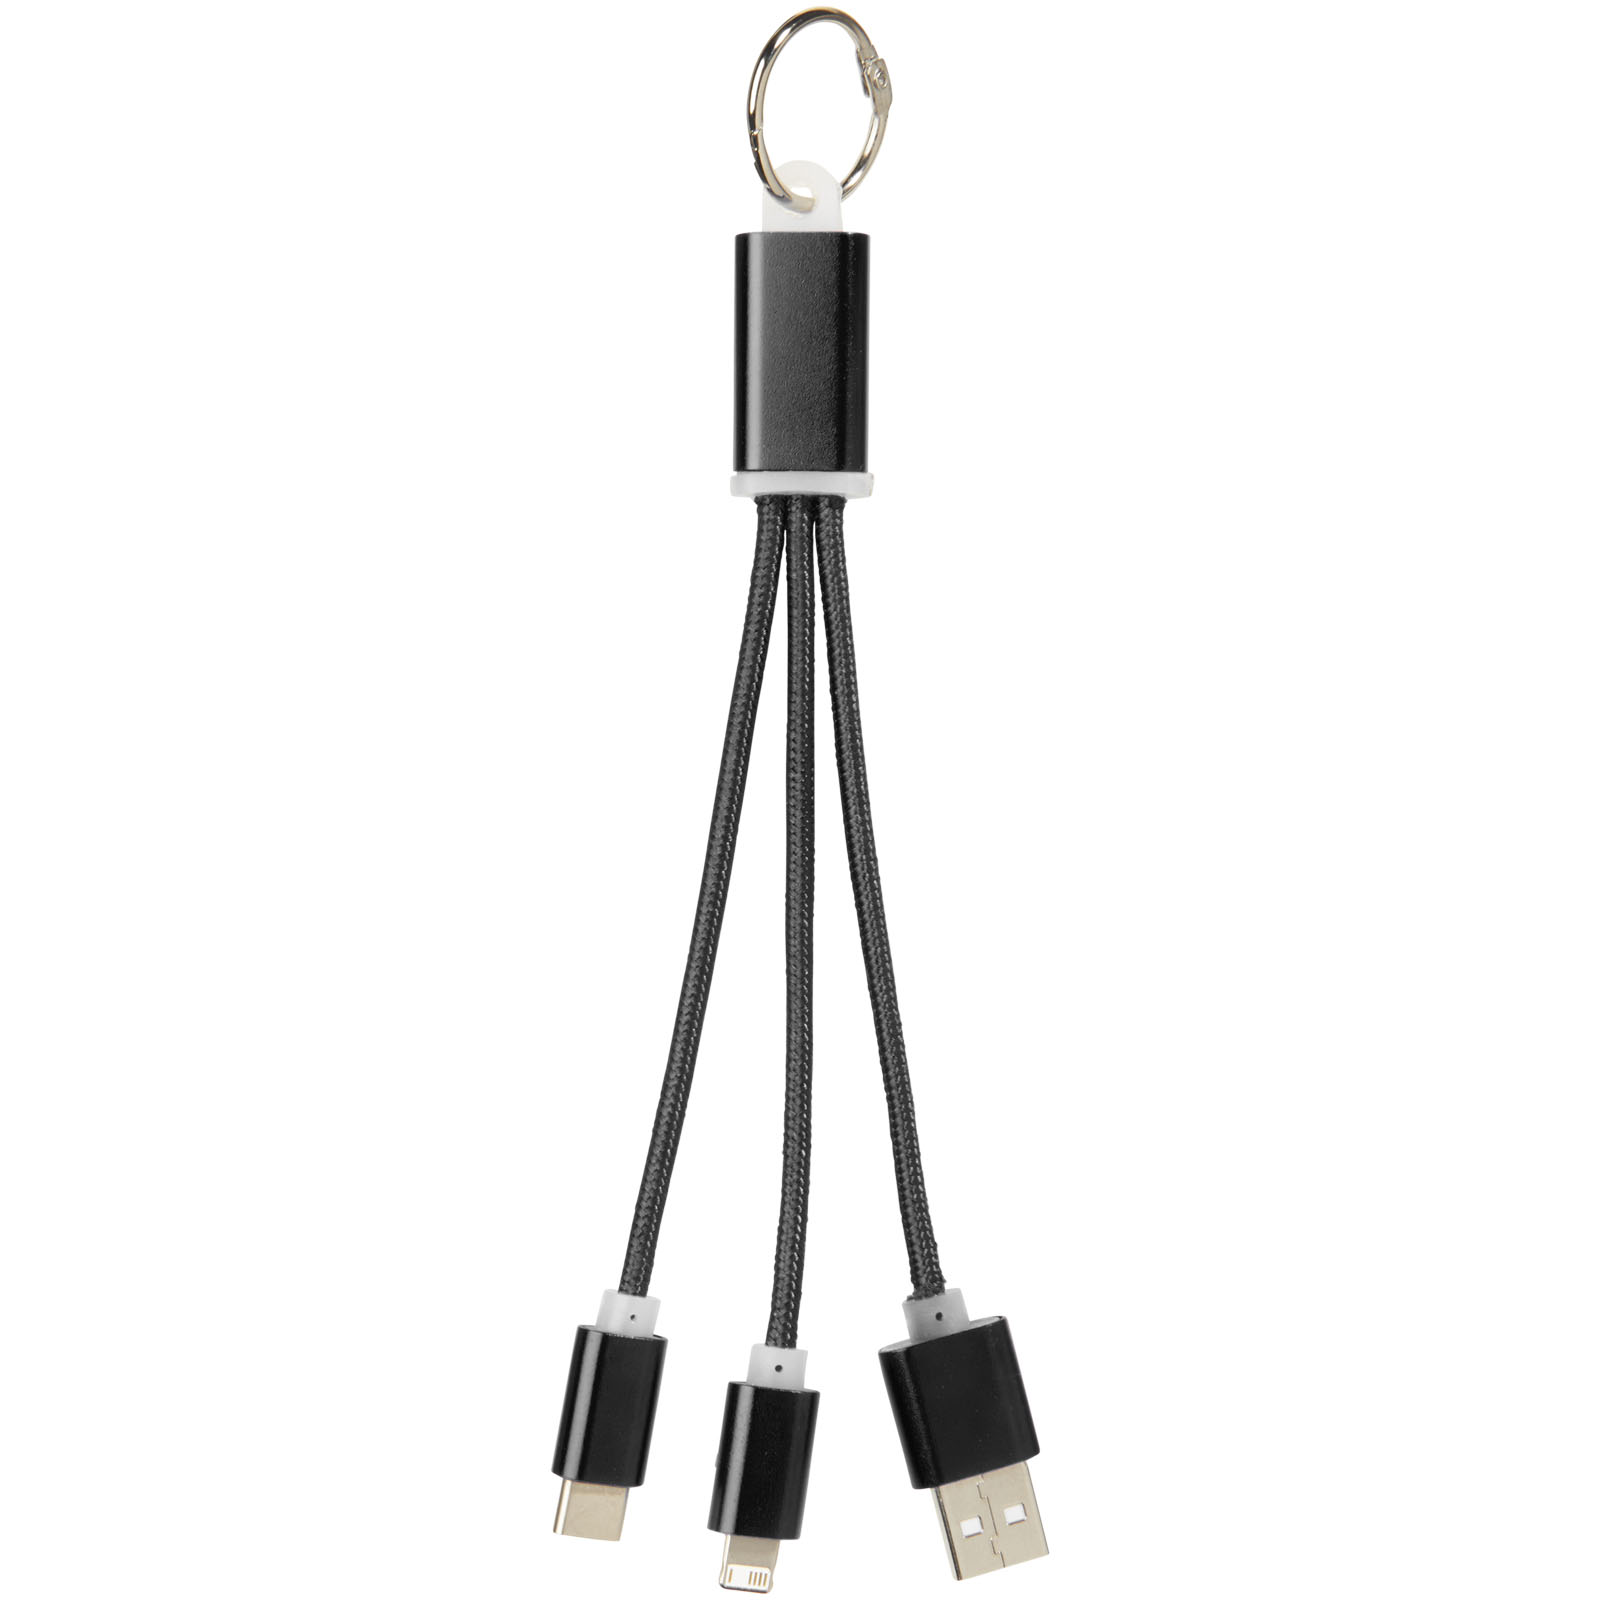 Câbles publicitaires - Câble de chargement 3-en-1 avec porte-clés Metal - 1